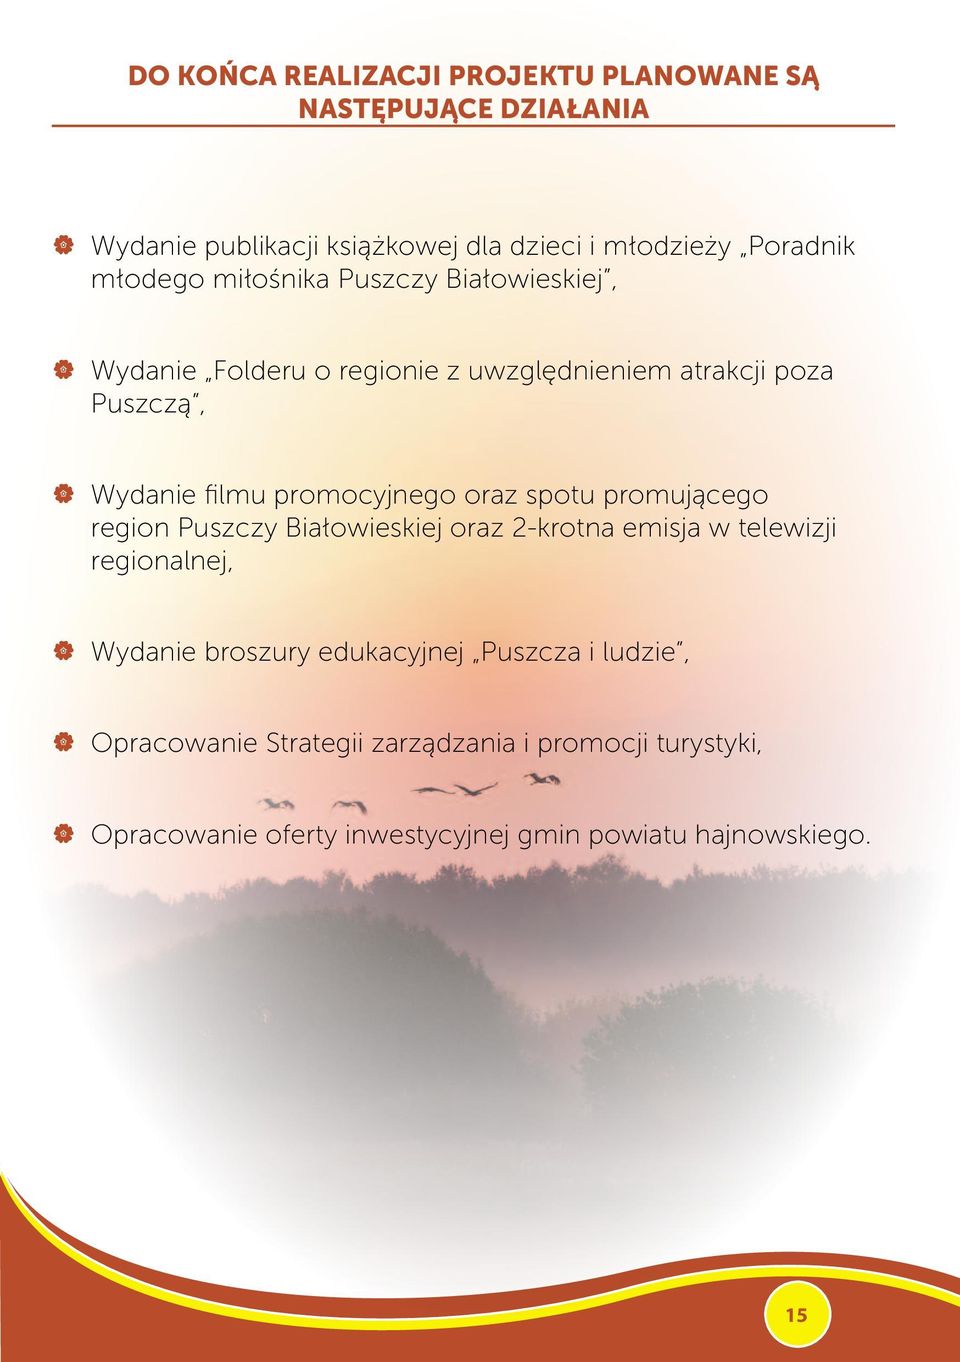 promocyjnego oraz spotu promującego region Puszczy Białowieskiej oraz 2-krotna emisja w telewizji regionalnej, Wydanie broszury